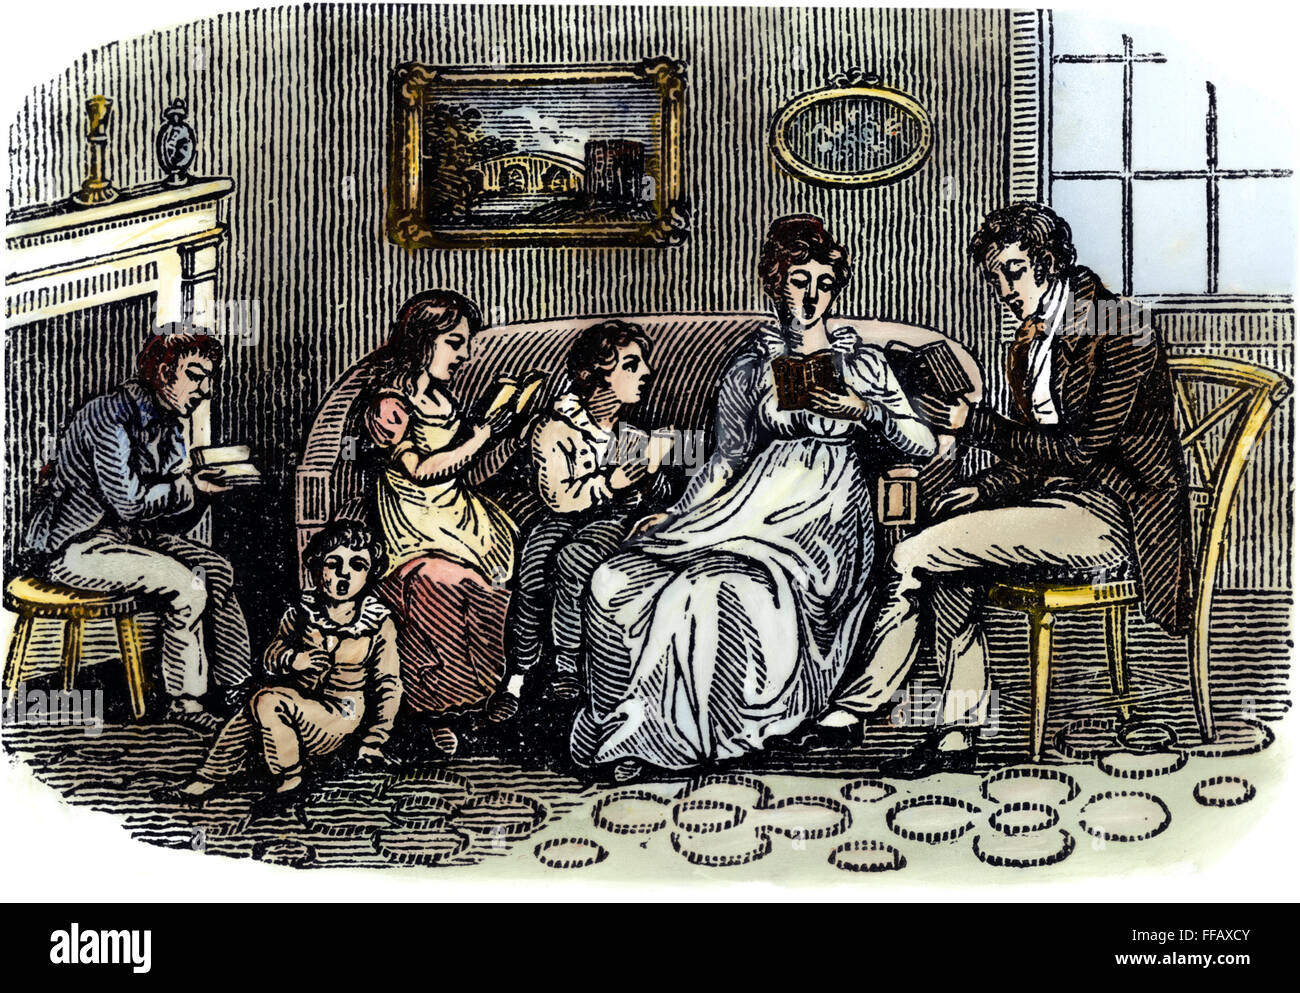 Familia: Lectura, 1800. /NA familia leer juntos: Grabado en madera de color, americano, c1800. Foto de stock